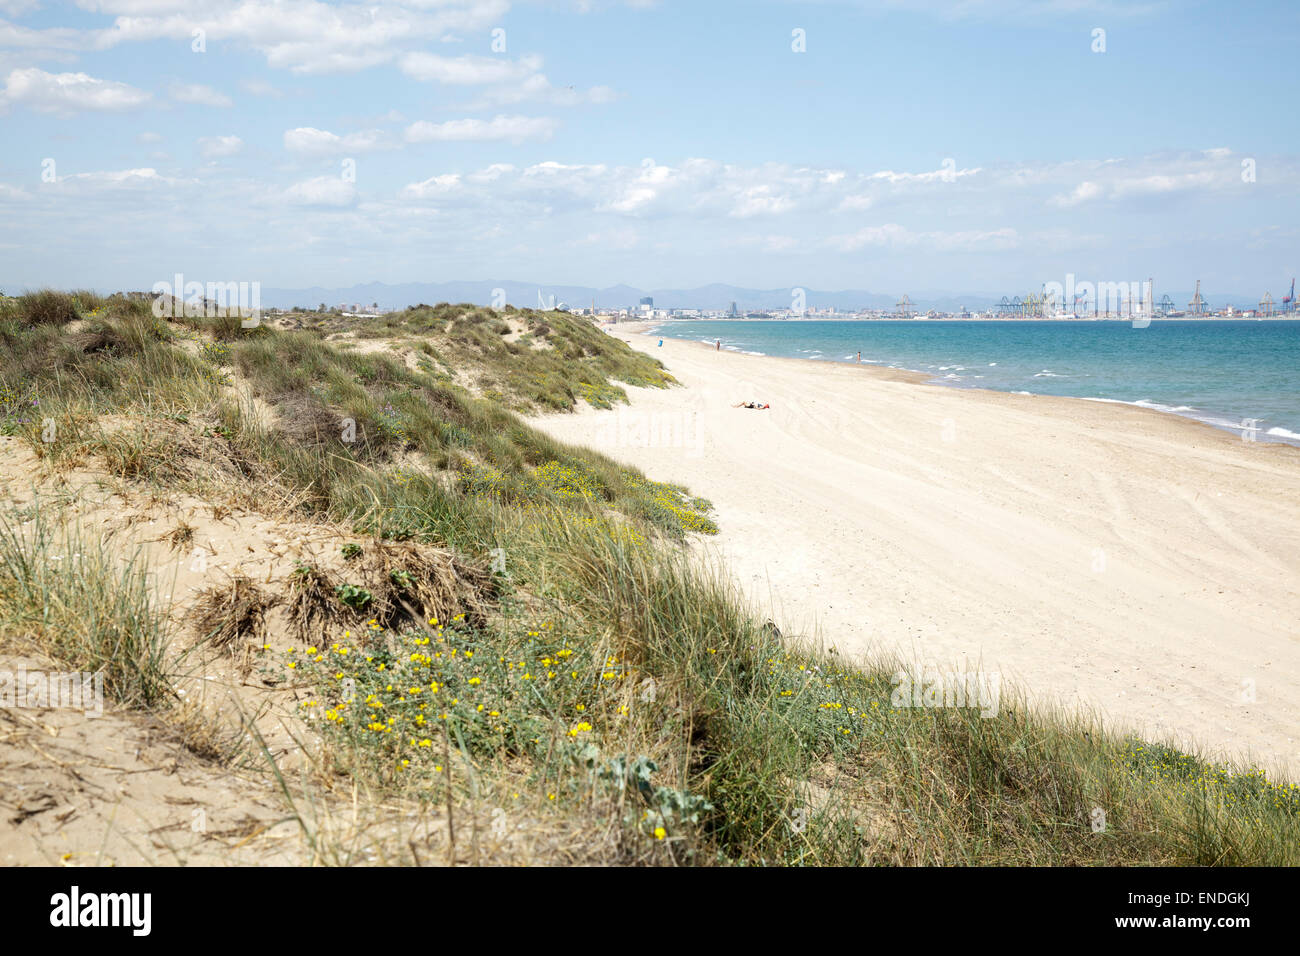 Playa de valencia fotografías imágenes de alta Página - Alamy